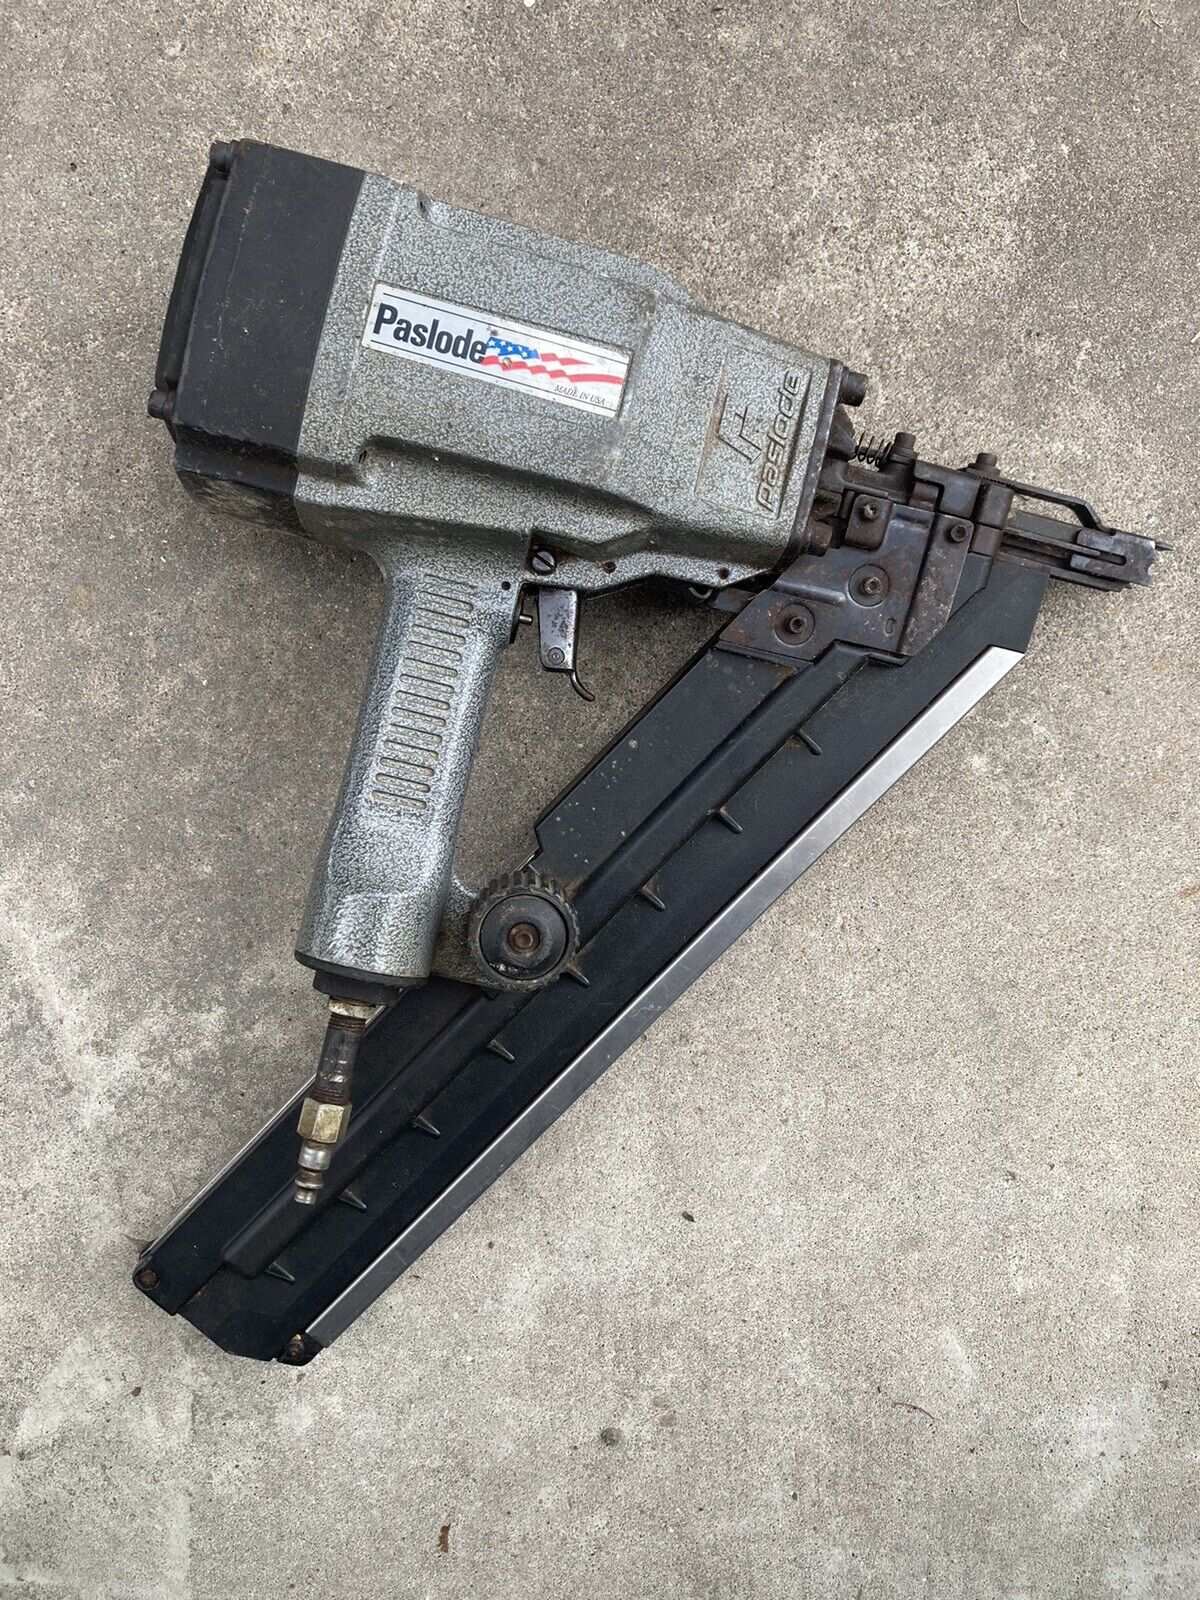 Paslode 5350/90s Nailer Pneumatic Air Nail Gun 3-1/4 in. 30° Untested/ Parts